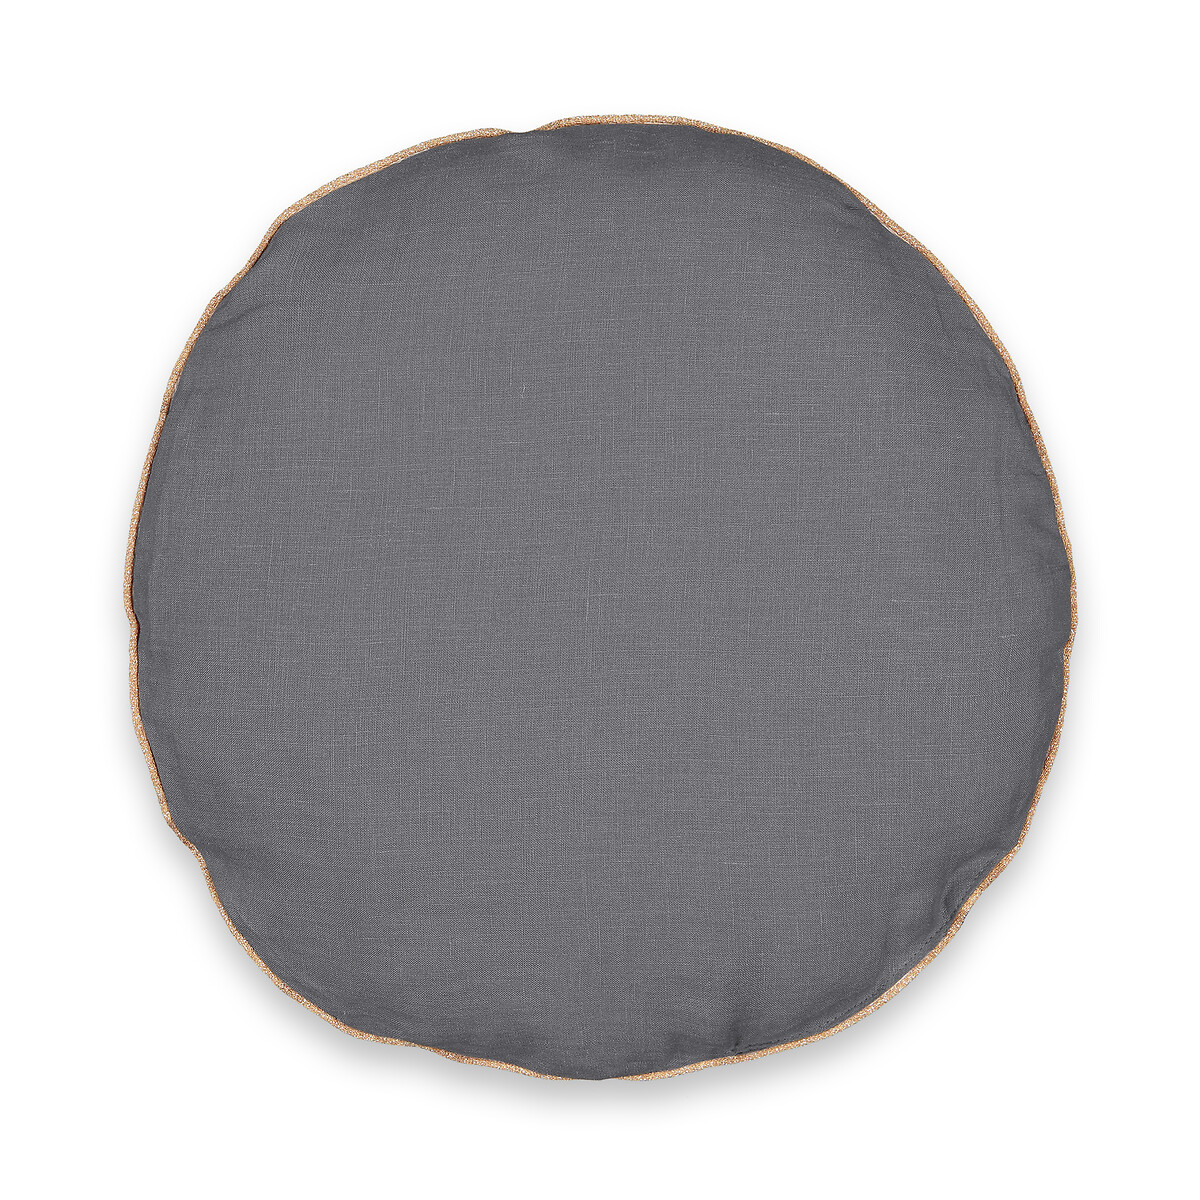 Подушка круглая из стираного льна Onega диаметр 40 см серый занавеска из 100 льна onega 260 x 135 см бежевый